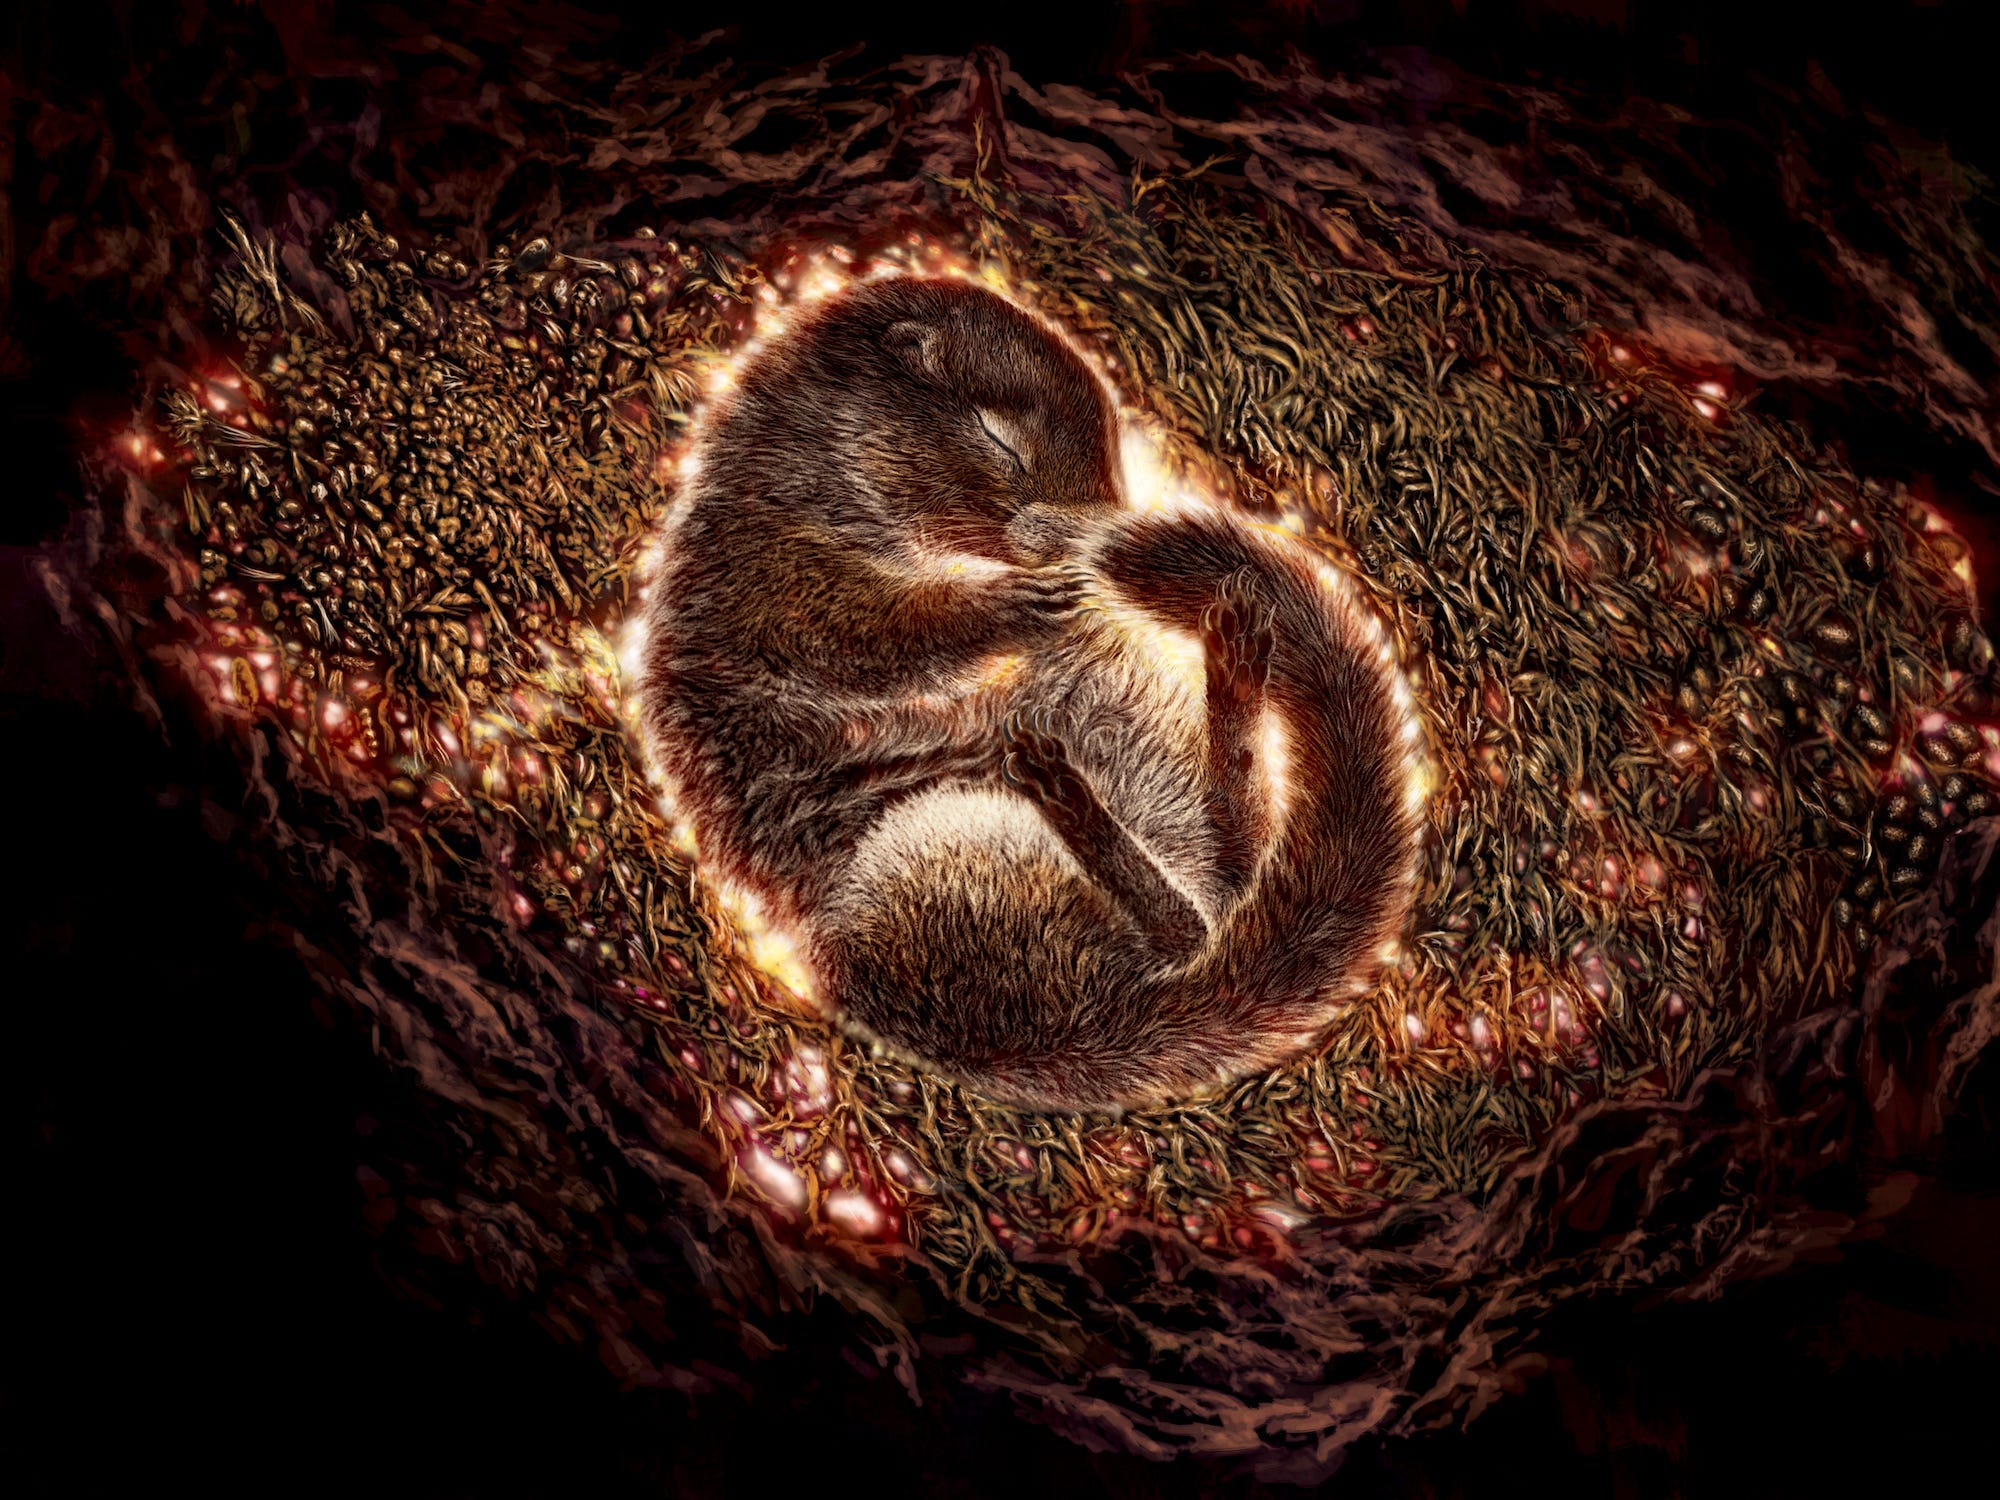 Eine Illustration eines arktischen Erdhörnchens, das zusammengerollt in einem unterirdischen Bau liegt.